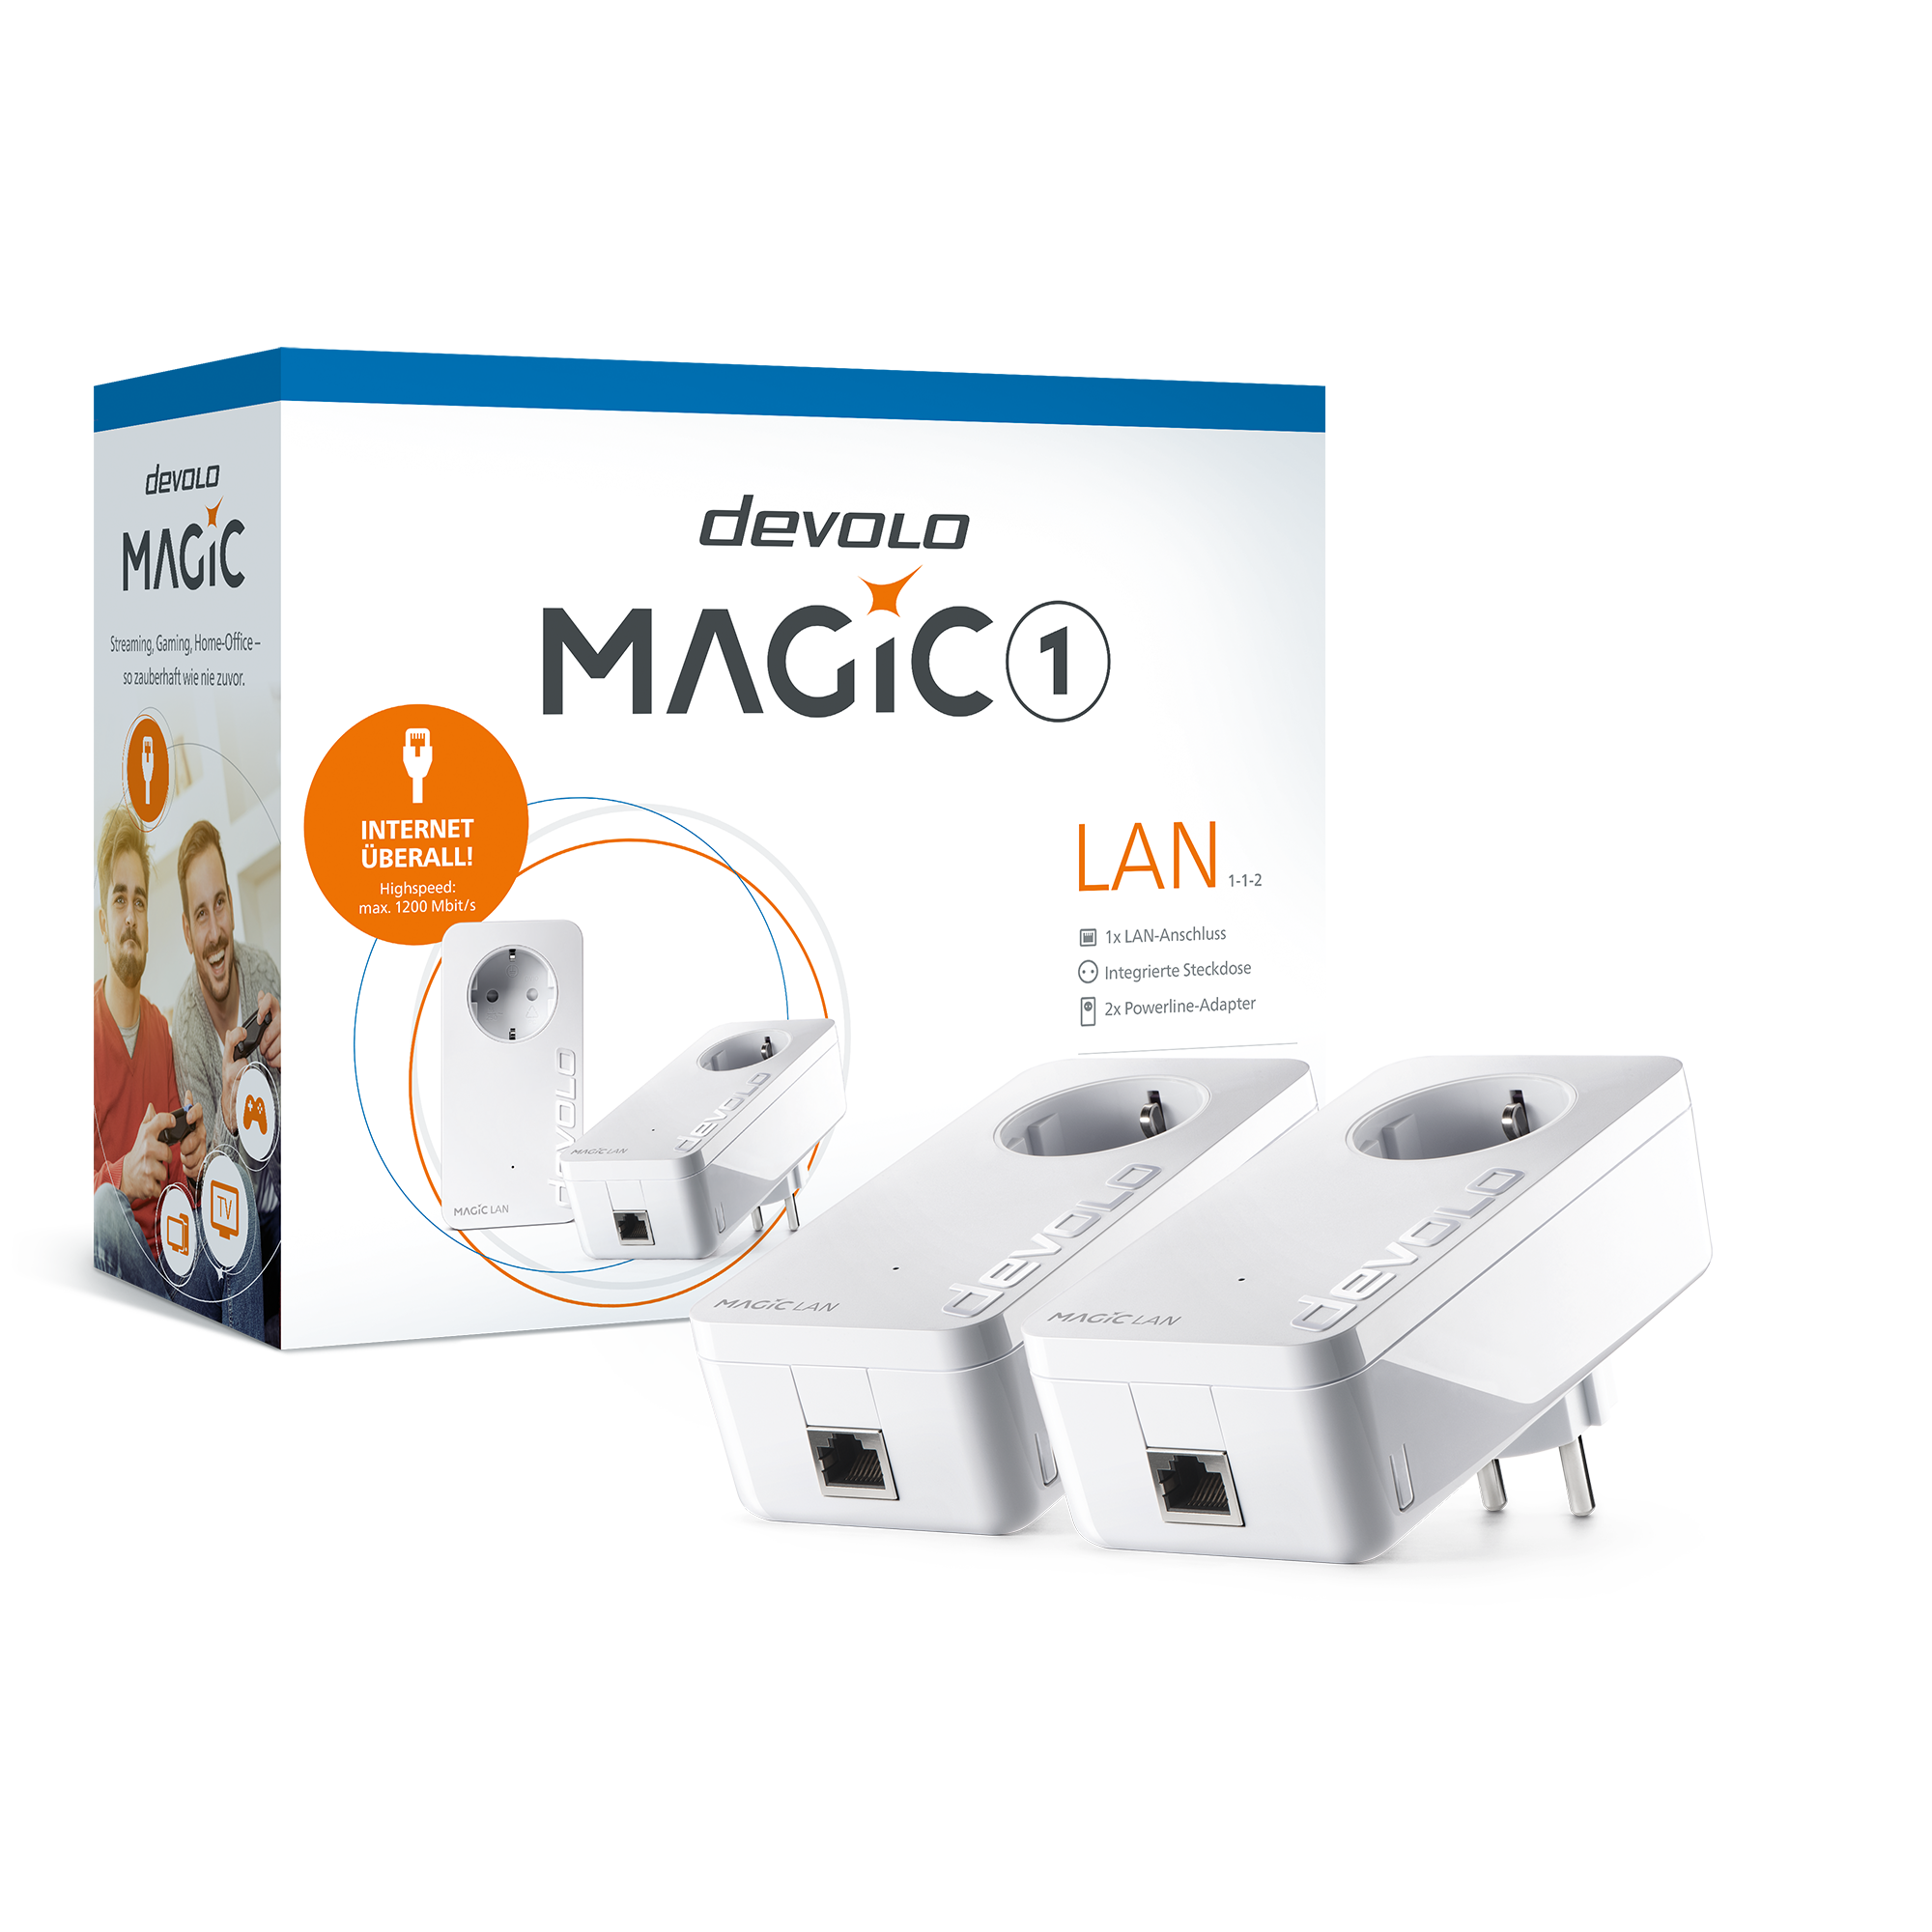 Powerline-Adapter Starter-Kit 'Magic 1 LAN 1-1' dLan 400 m 1200 Mbit/s + product picture